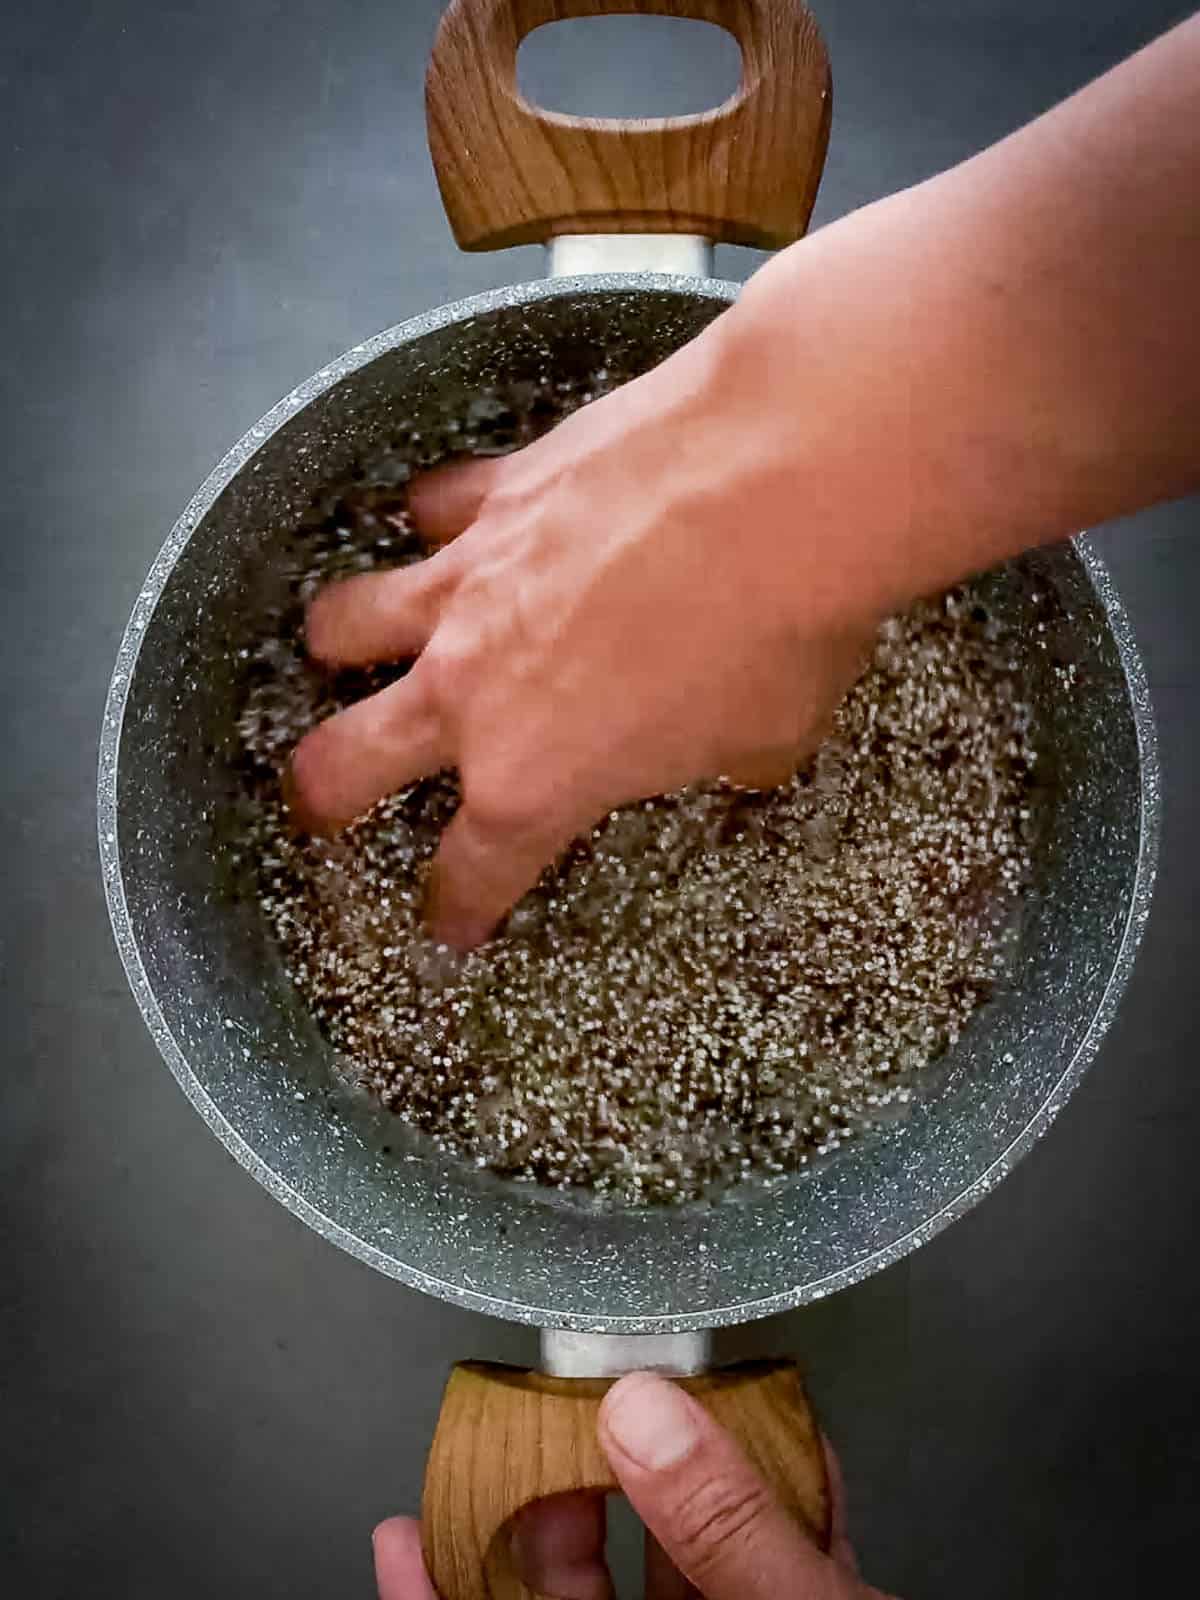 washing quinoa